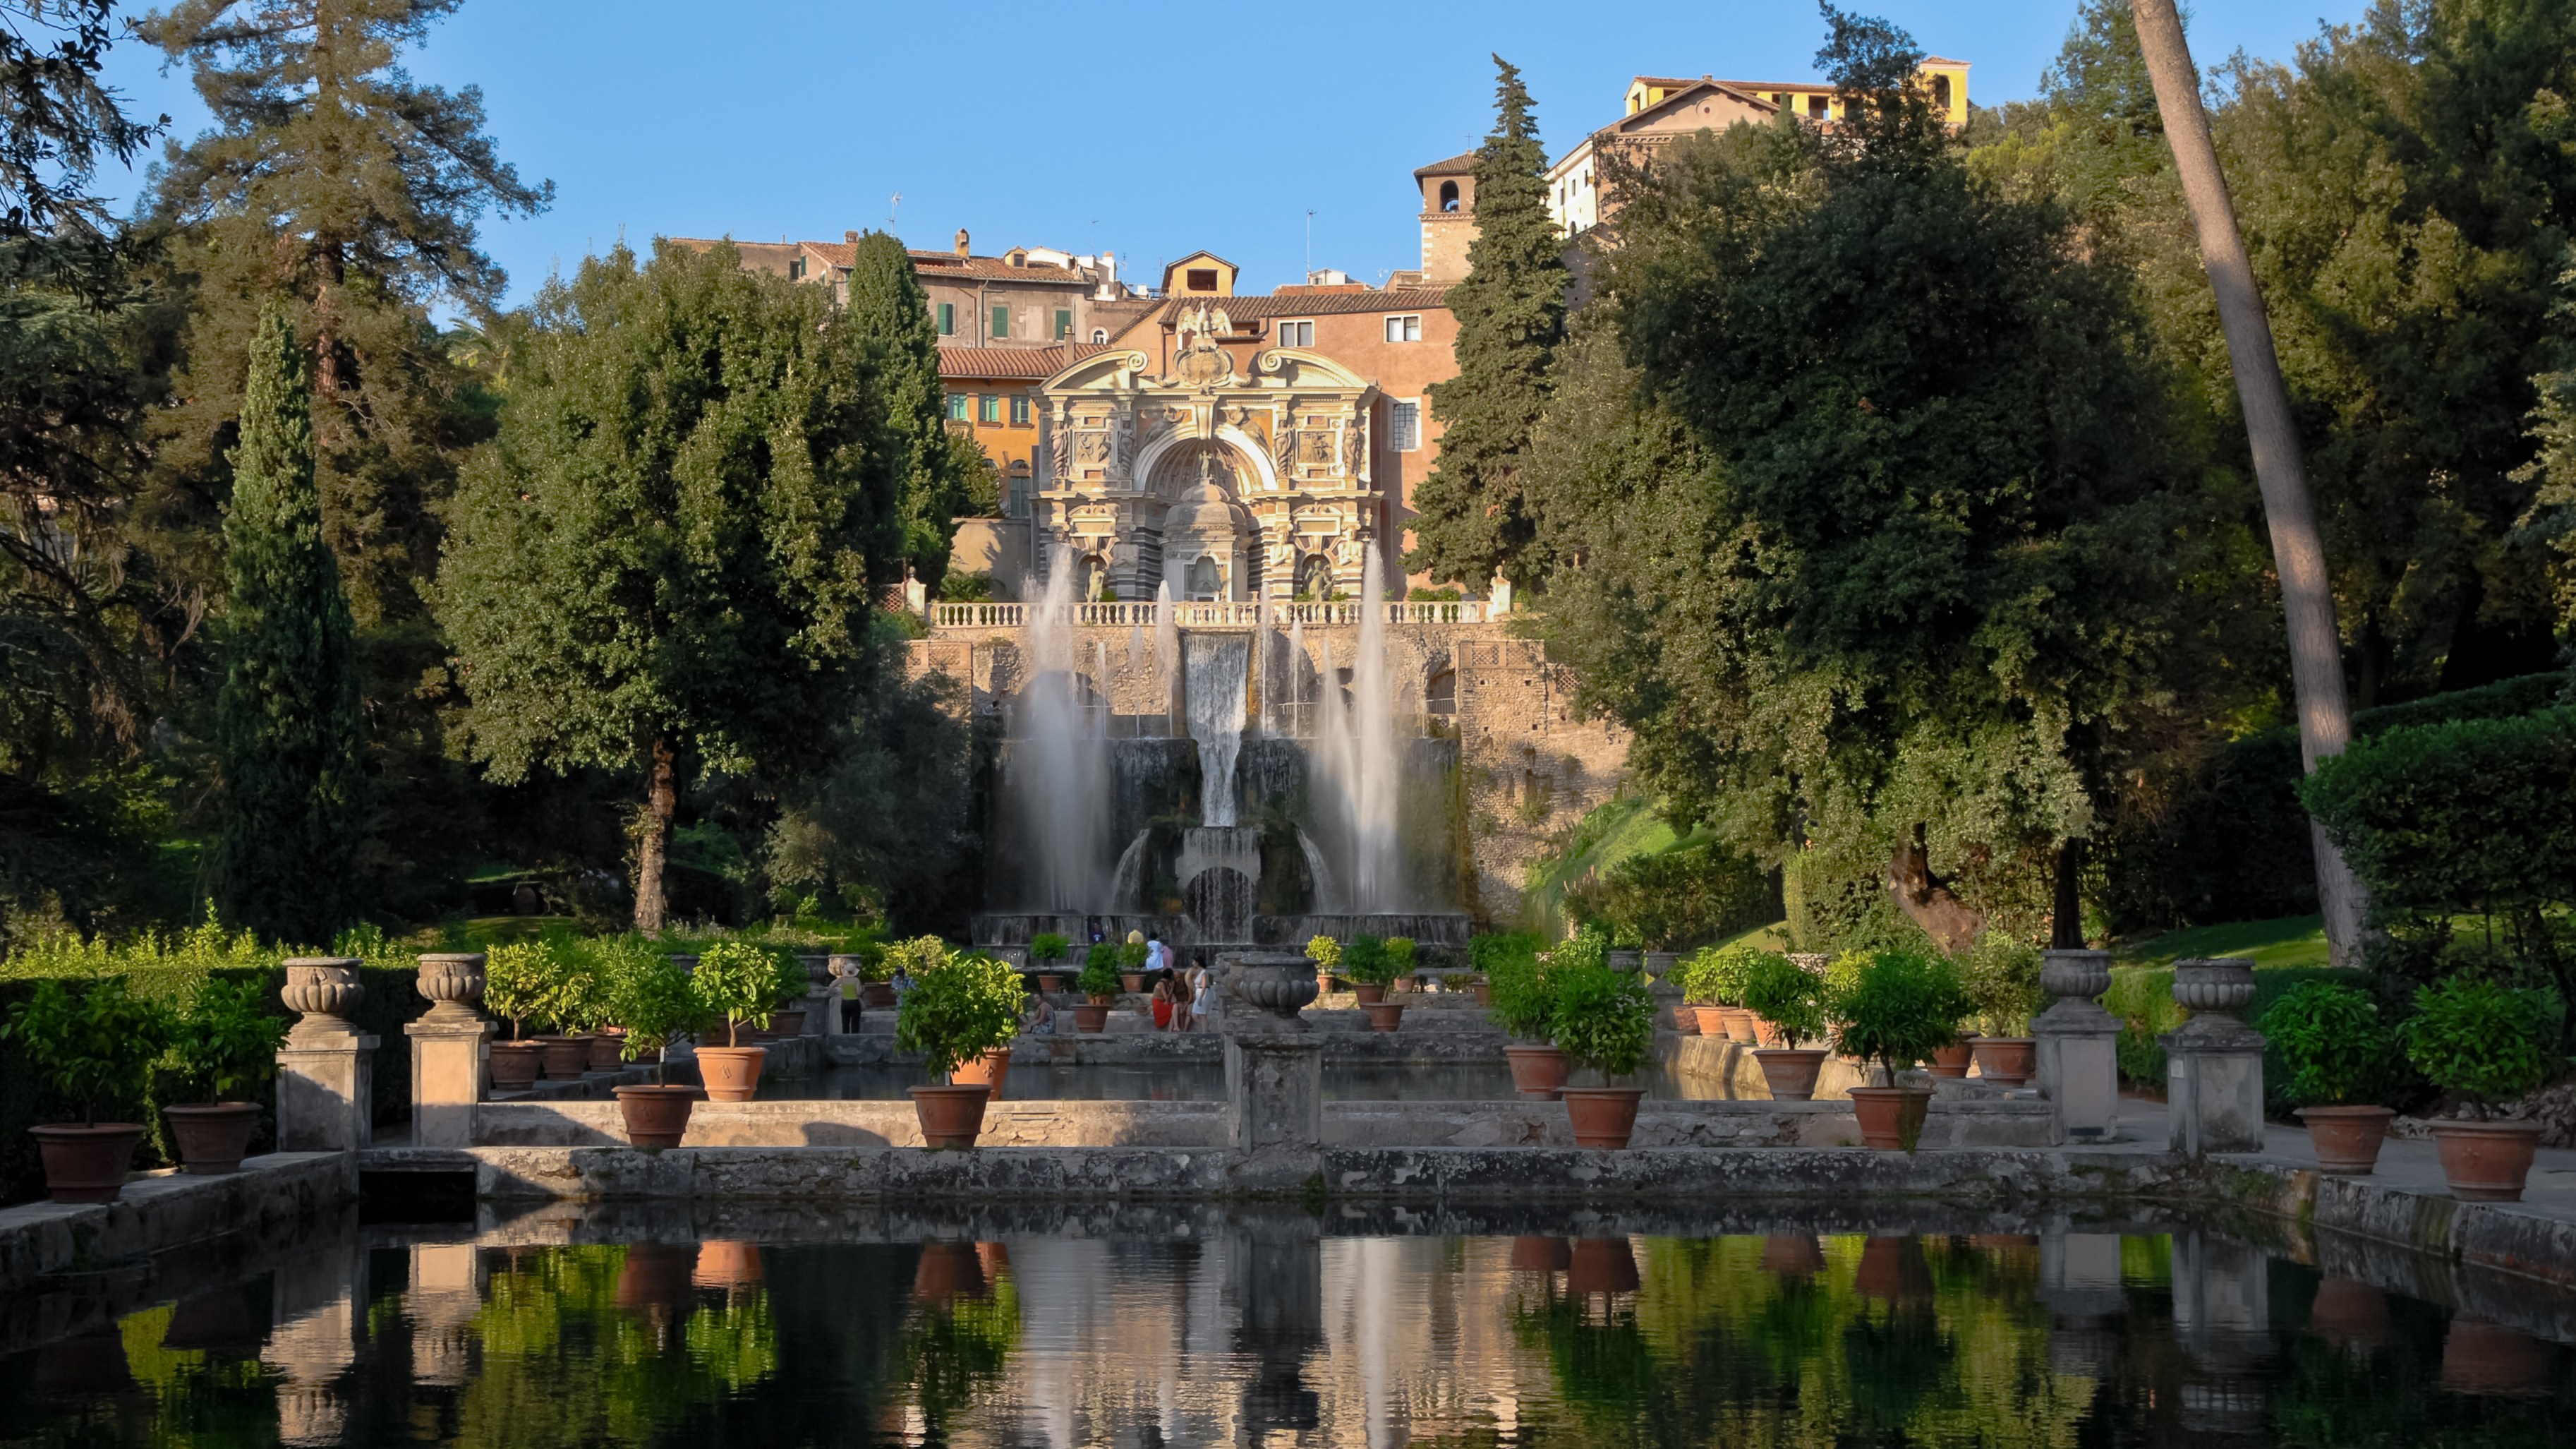 Perhaps the greatest show-off garden of all: Villa d’Este in Tivoli, near Rome